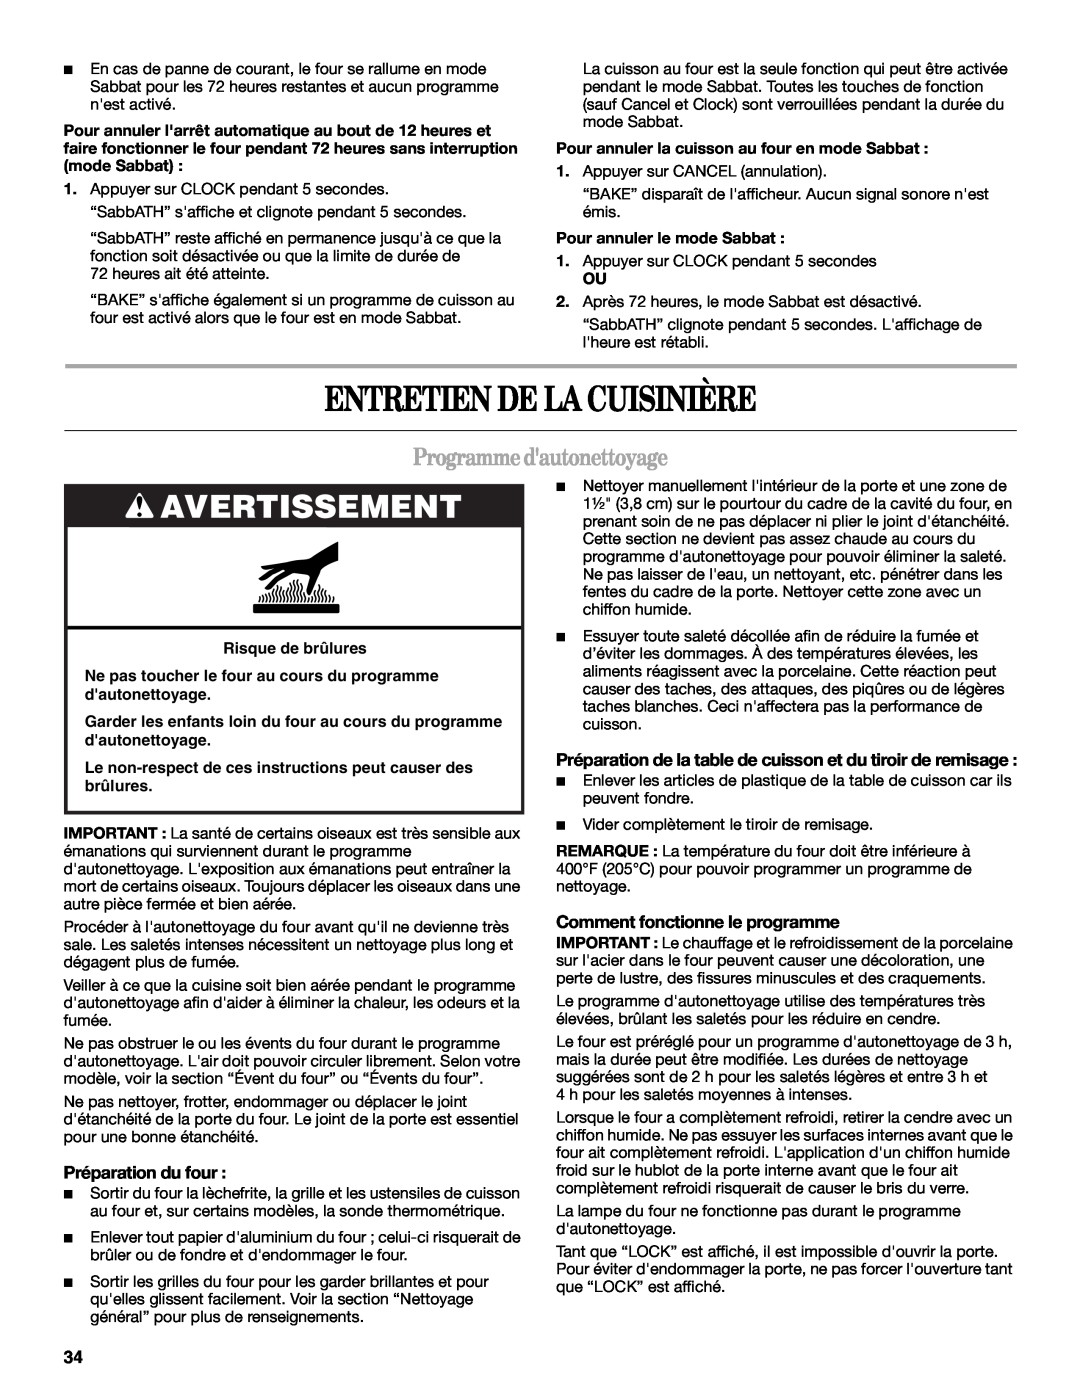 Whirlpool GW397LXU manual Entretien De La Cuisinière, Programmedautonettoyage, Avertissement, Préparation du four 